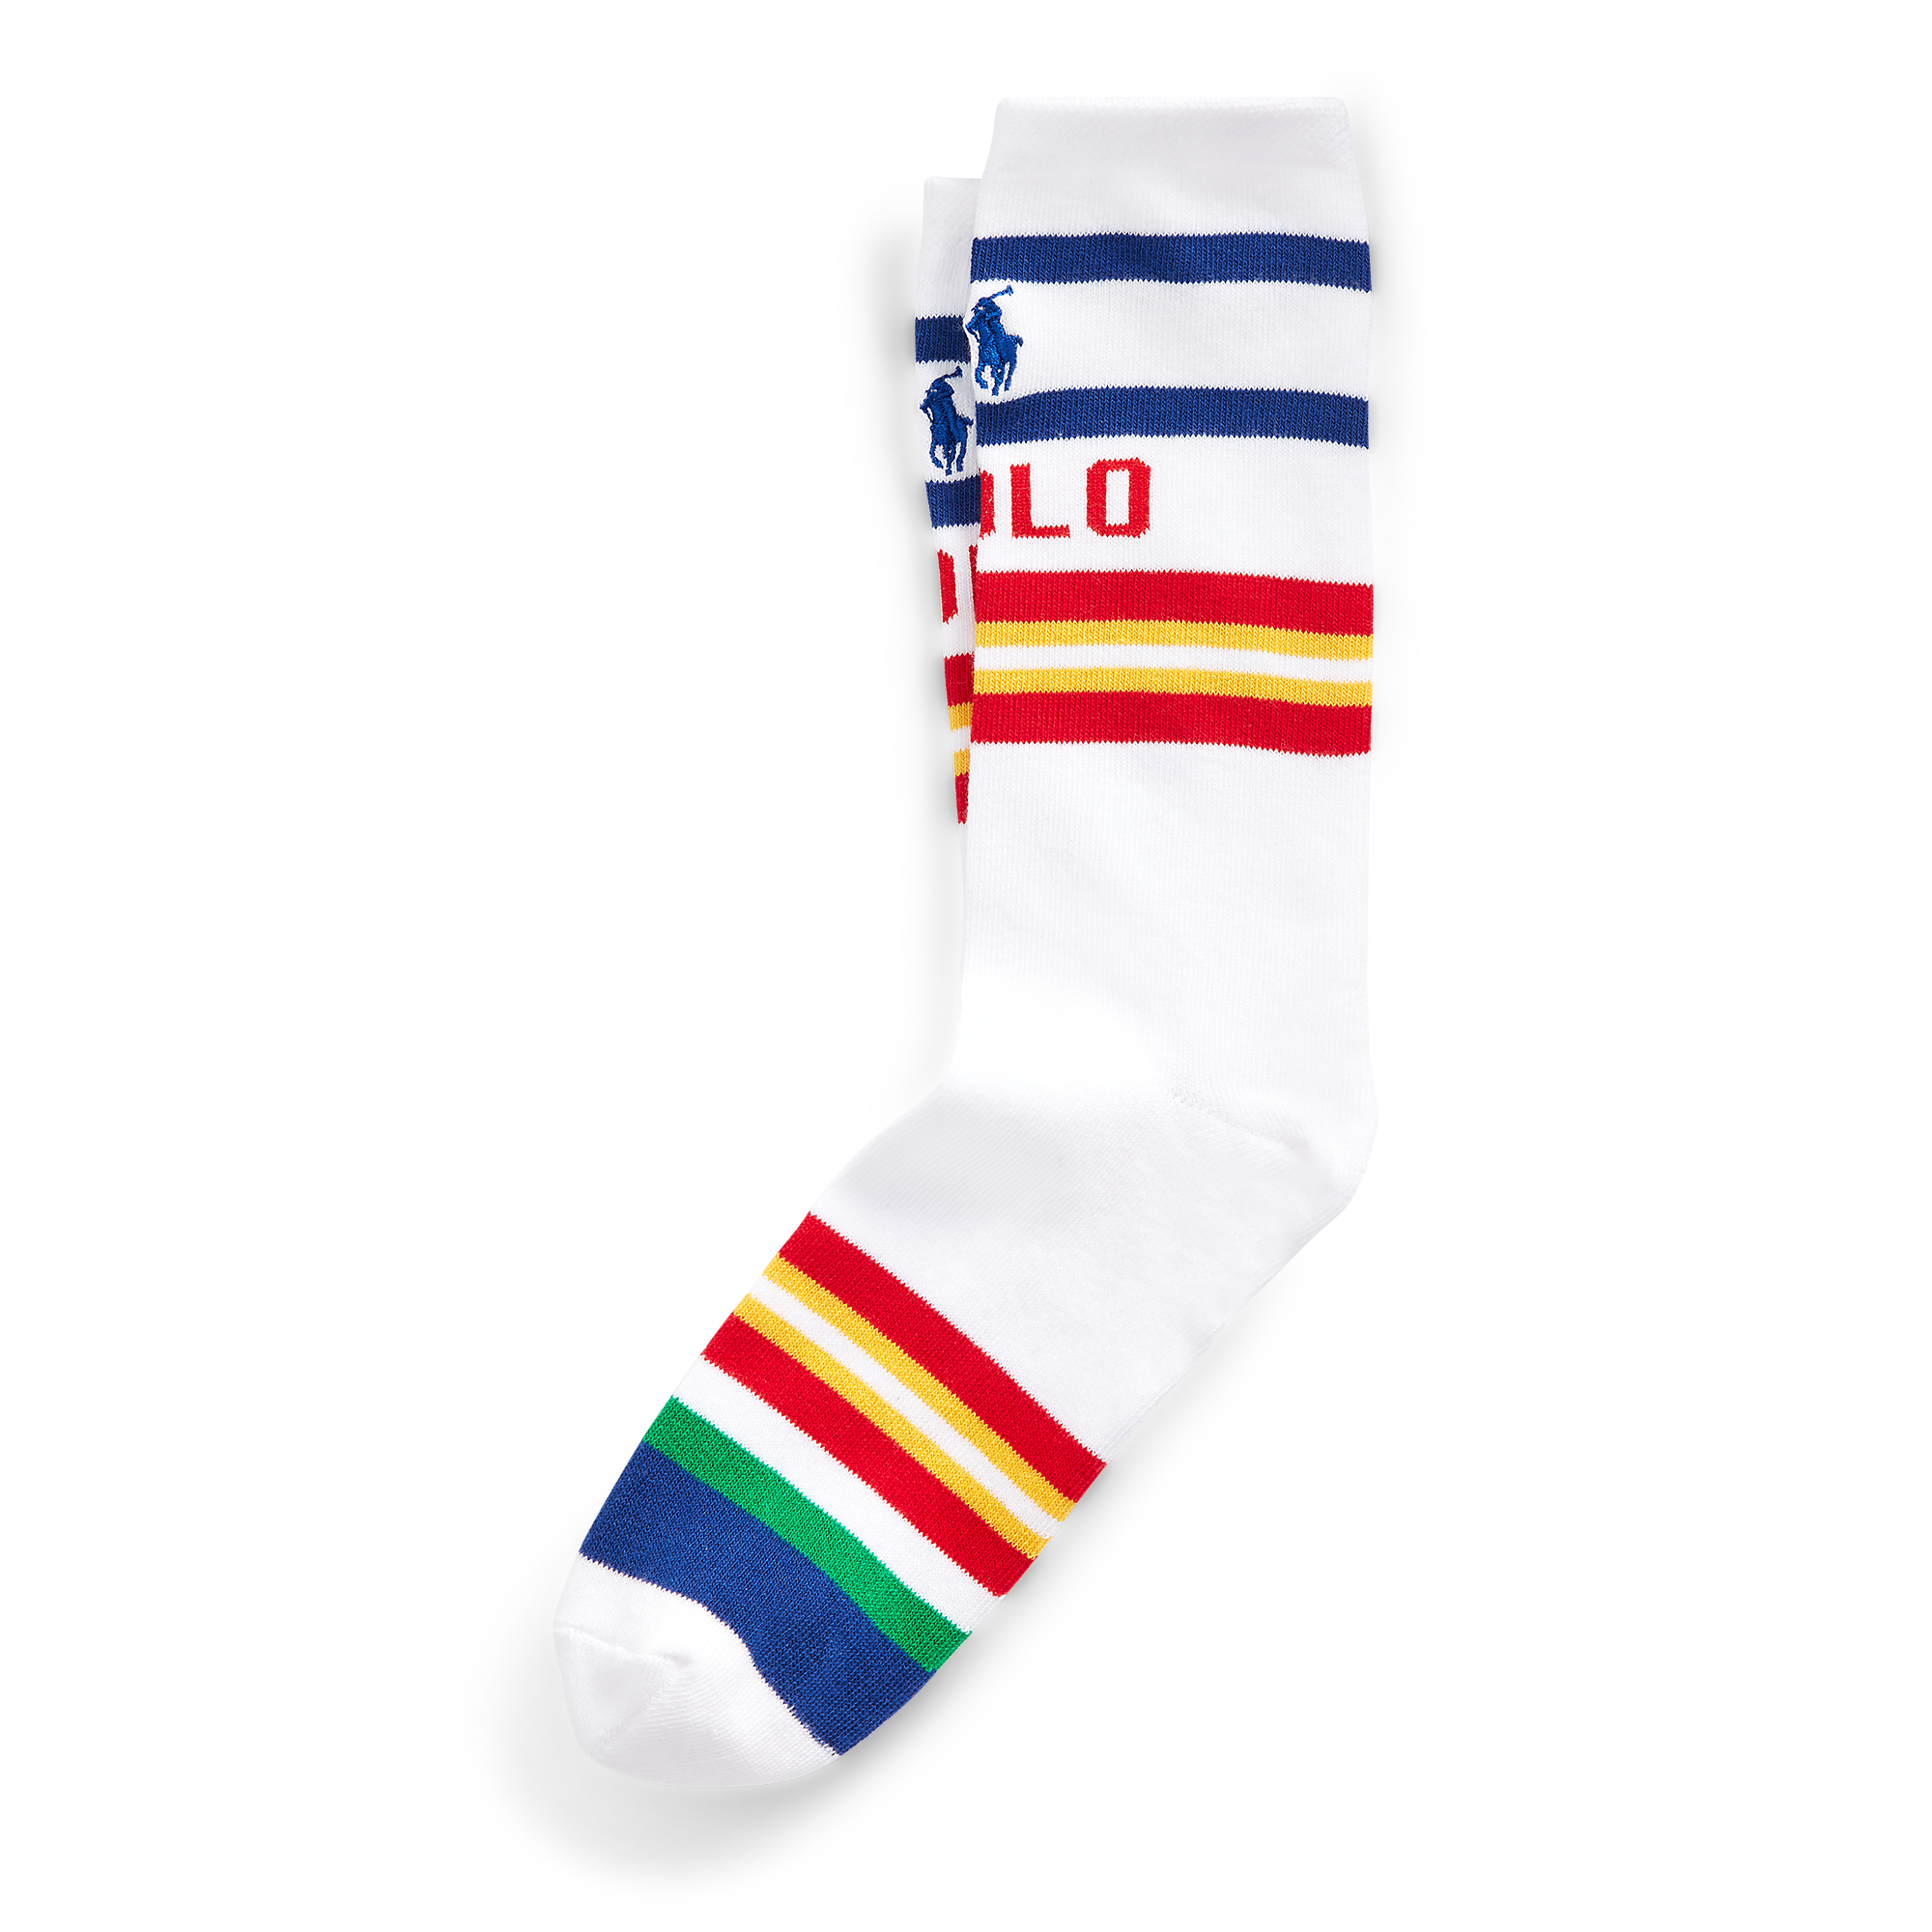 Ralph Lauren Polo Stripe Tube Socks. 1